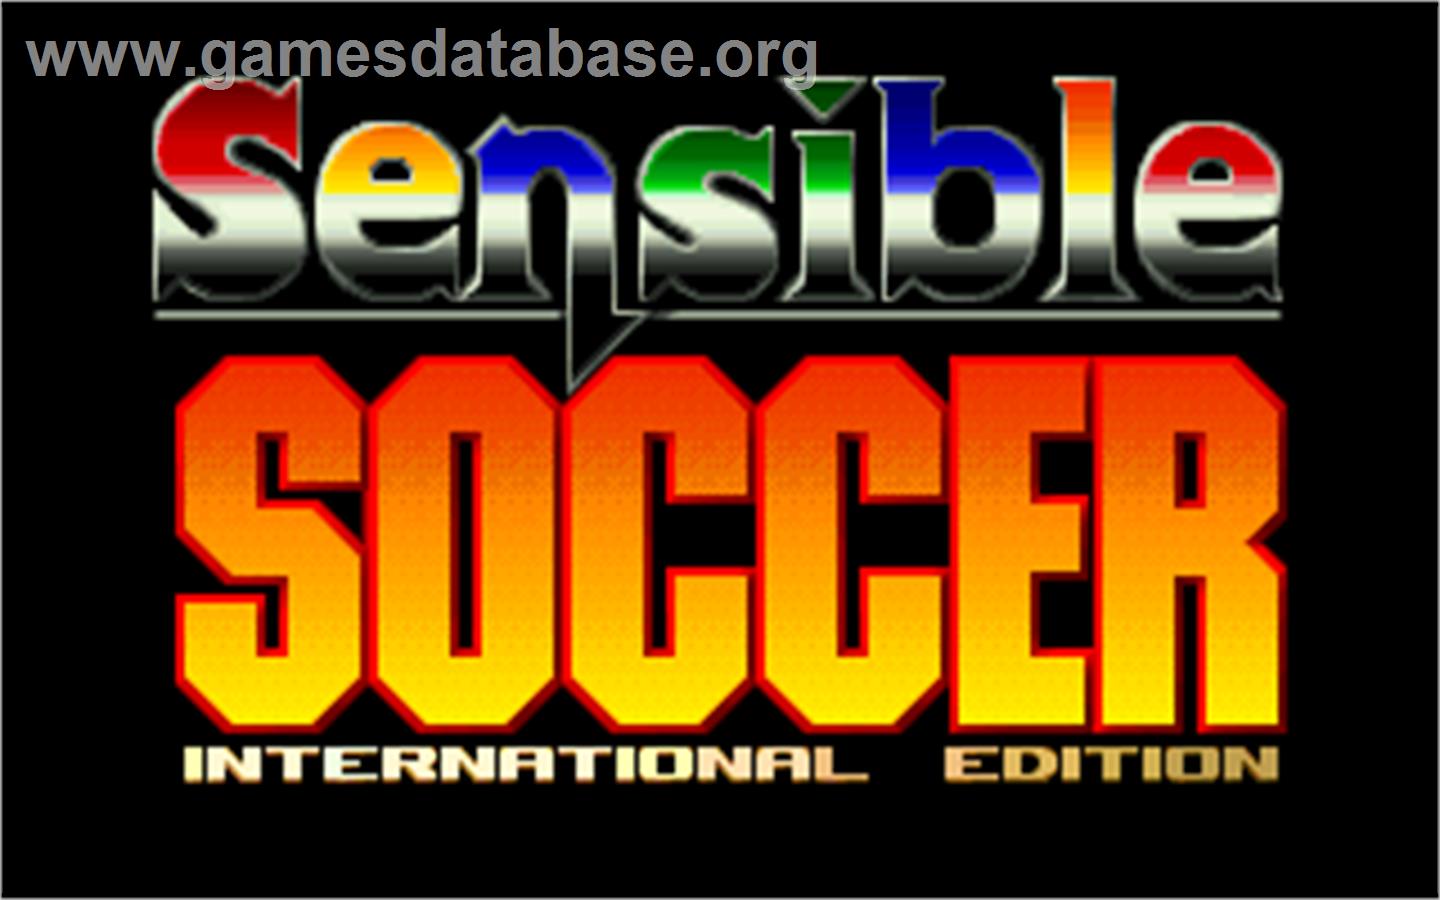 Sensible Soccer: International Edition - Atari Jaguar - Artwork - Title Screen